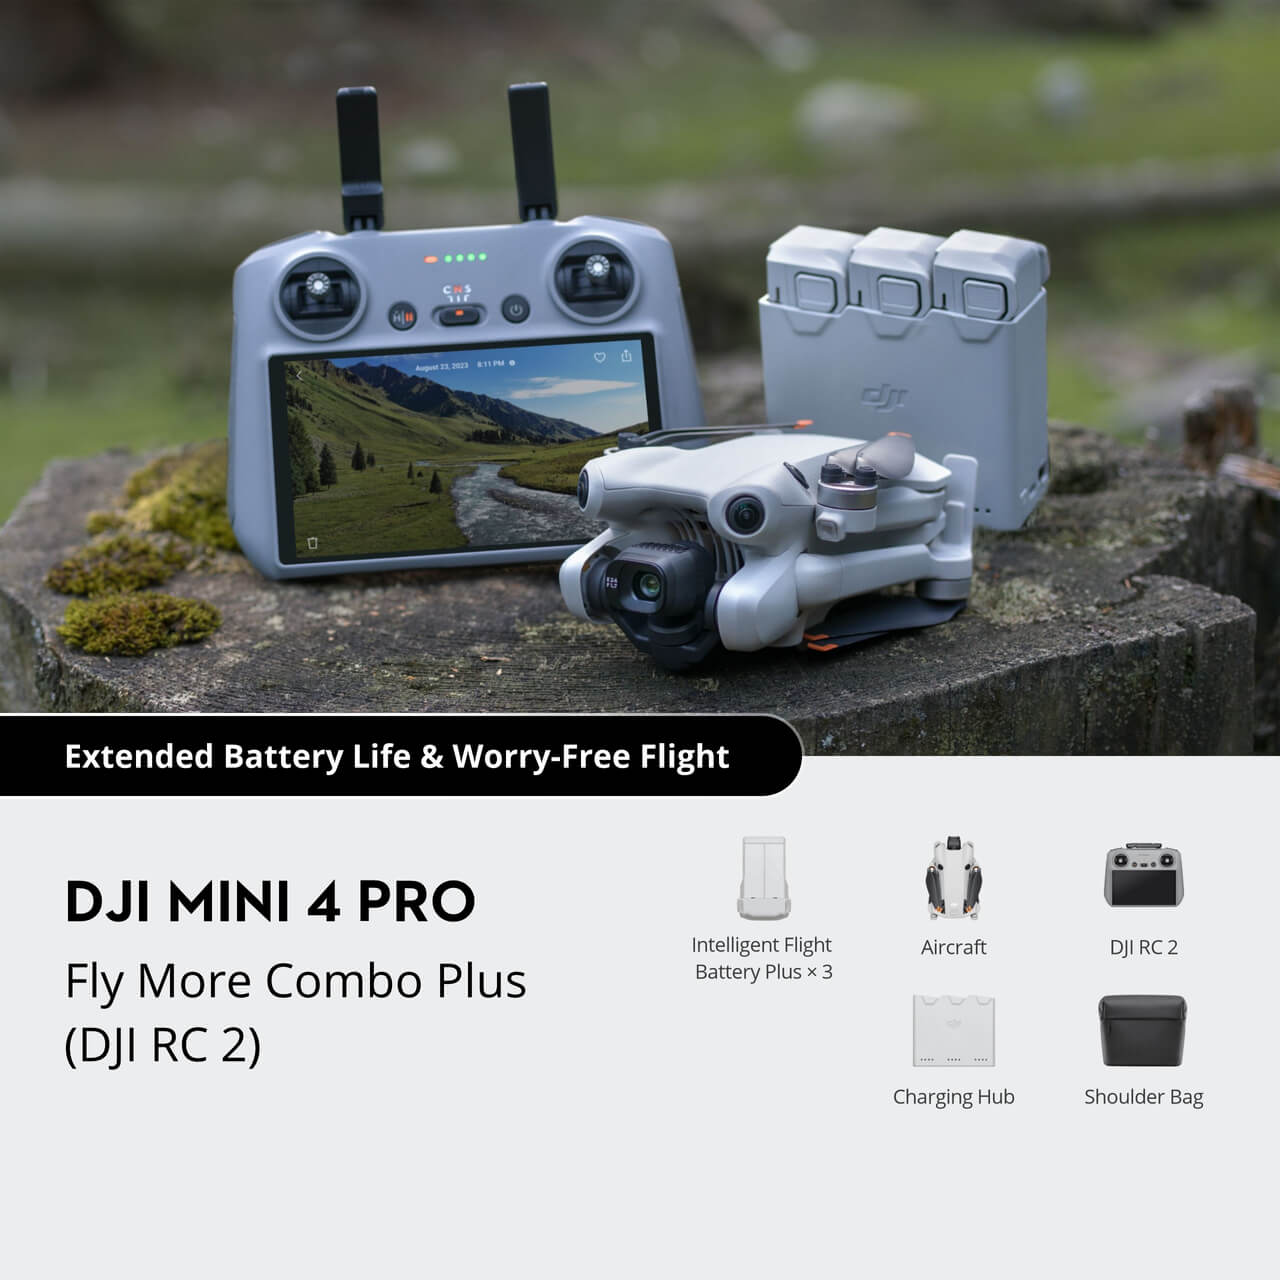 DJI MINI 4 PRO vs Mini 3 Pro